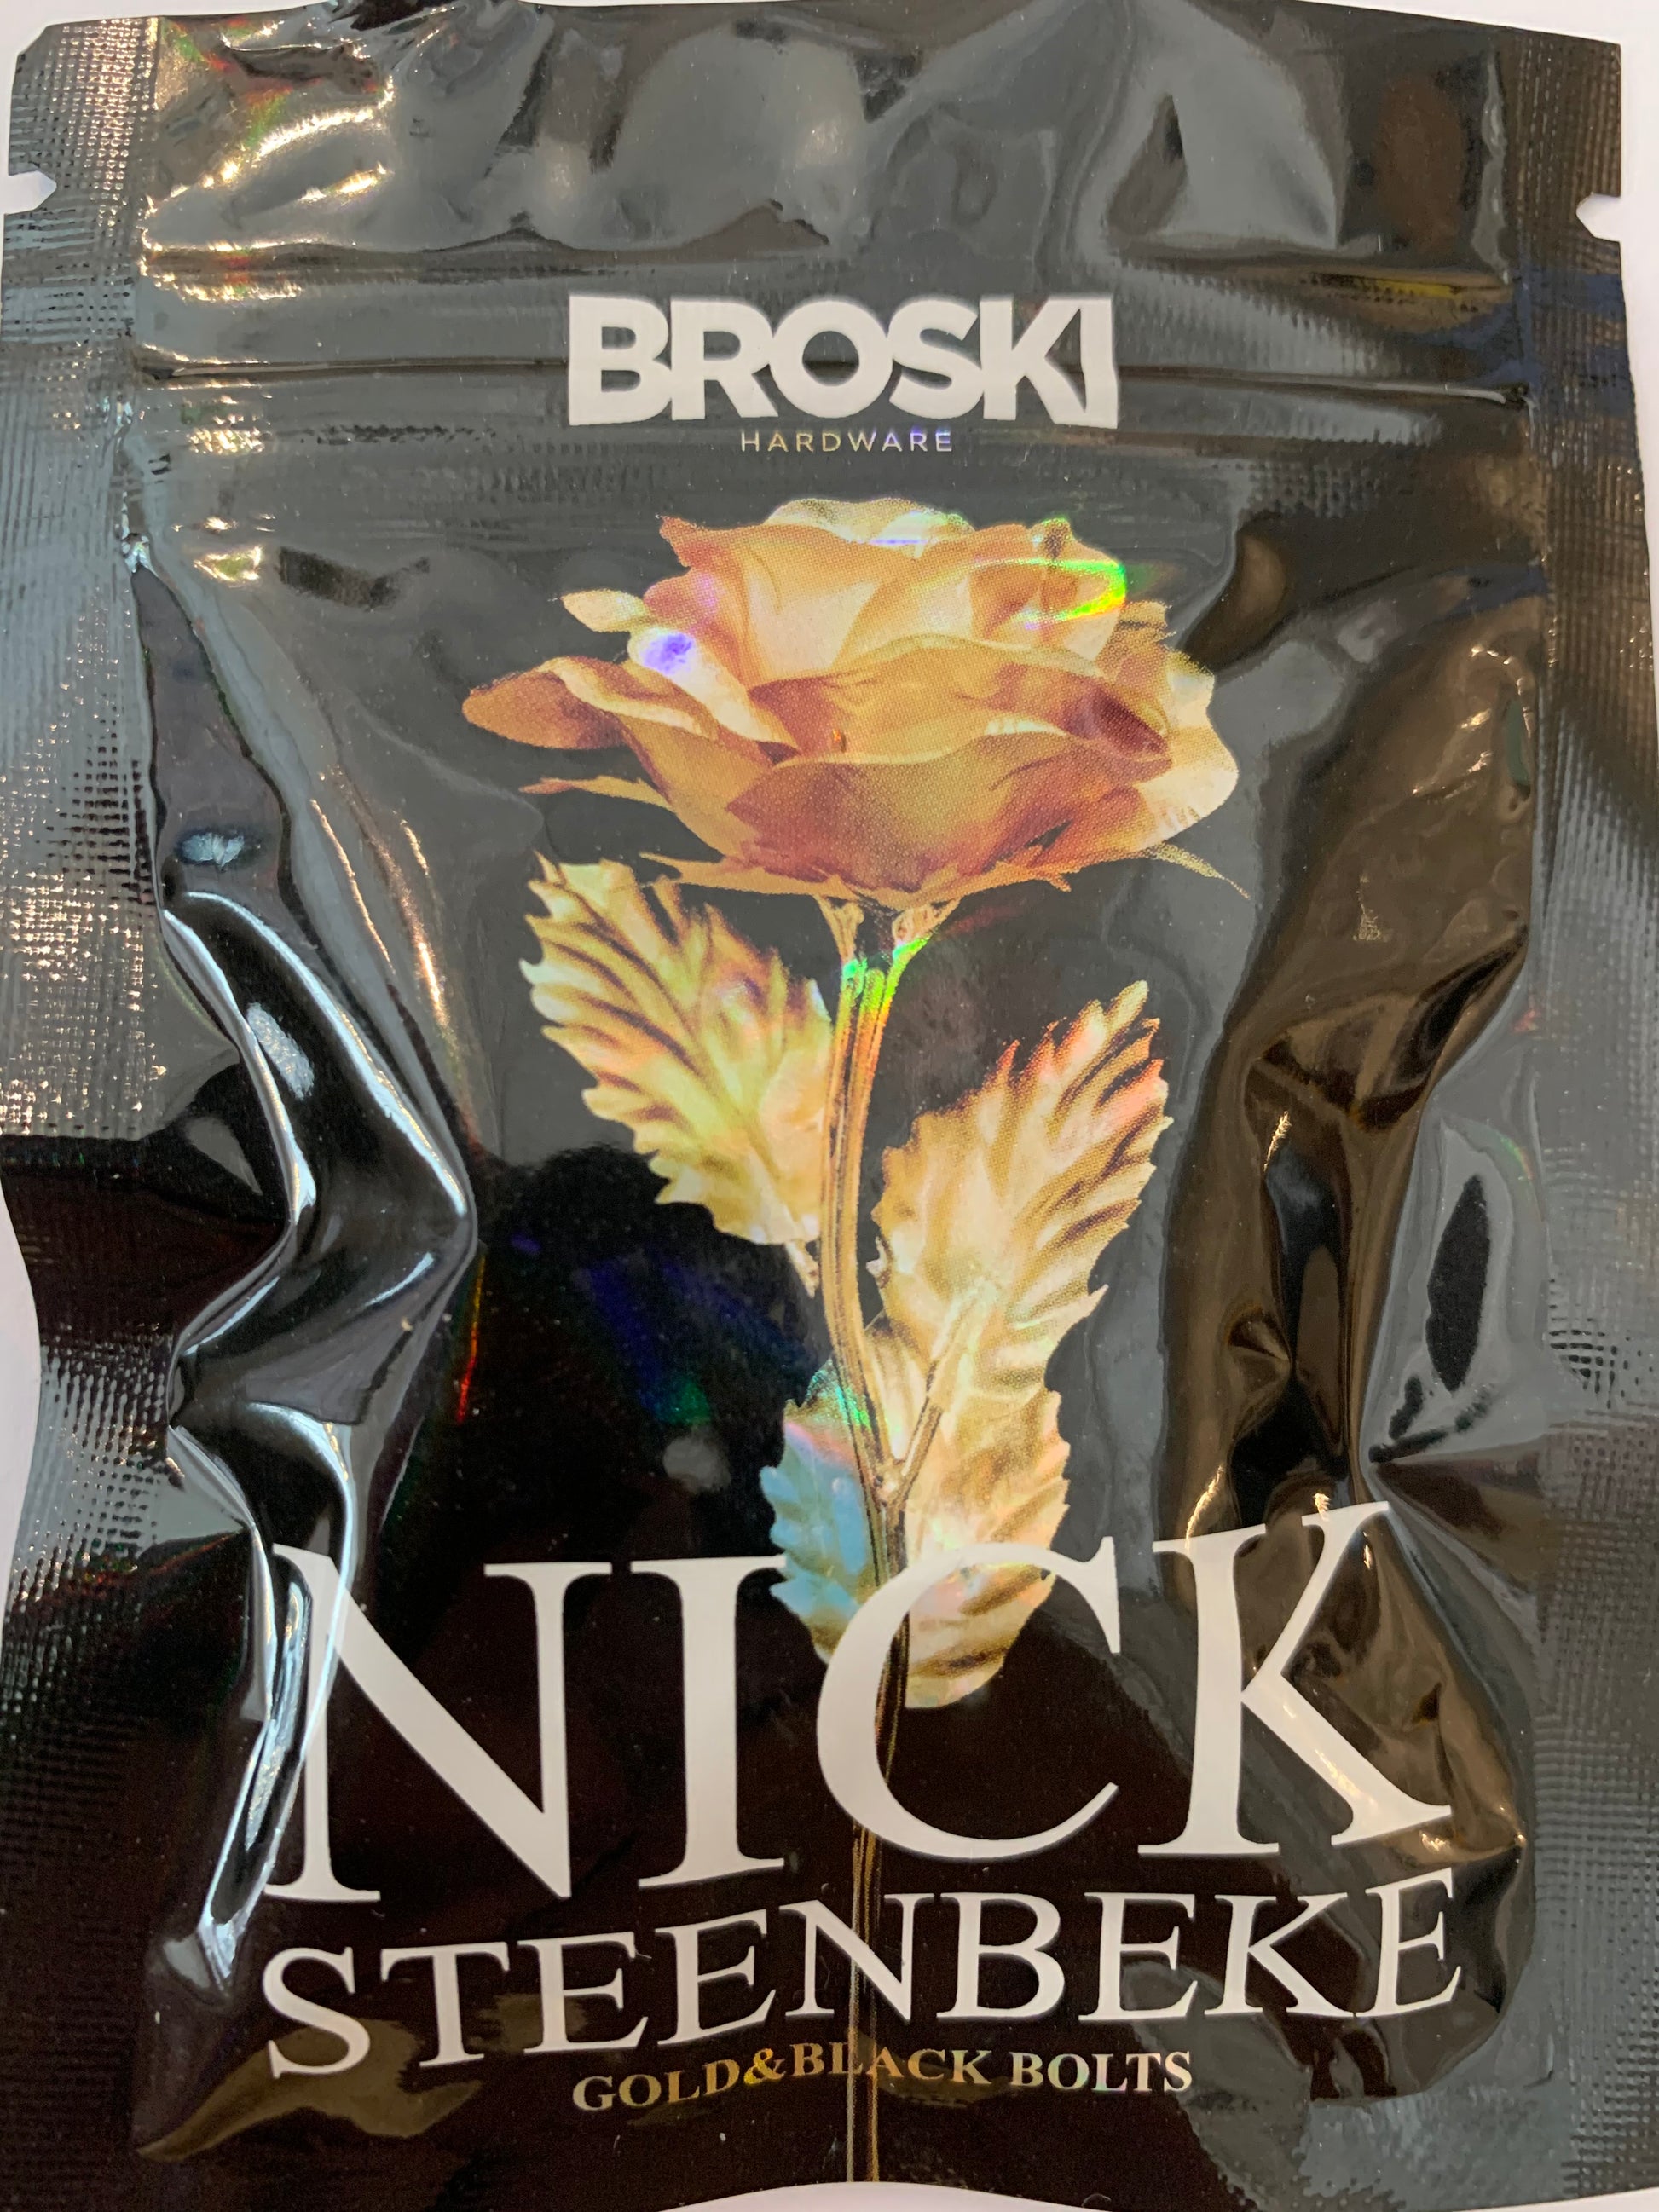 Broski Nick Steenbeke Hardware Black & Gold